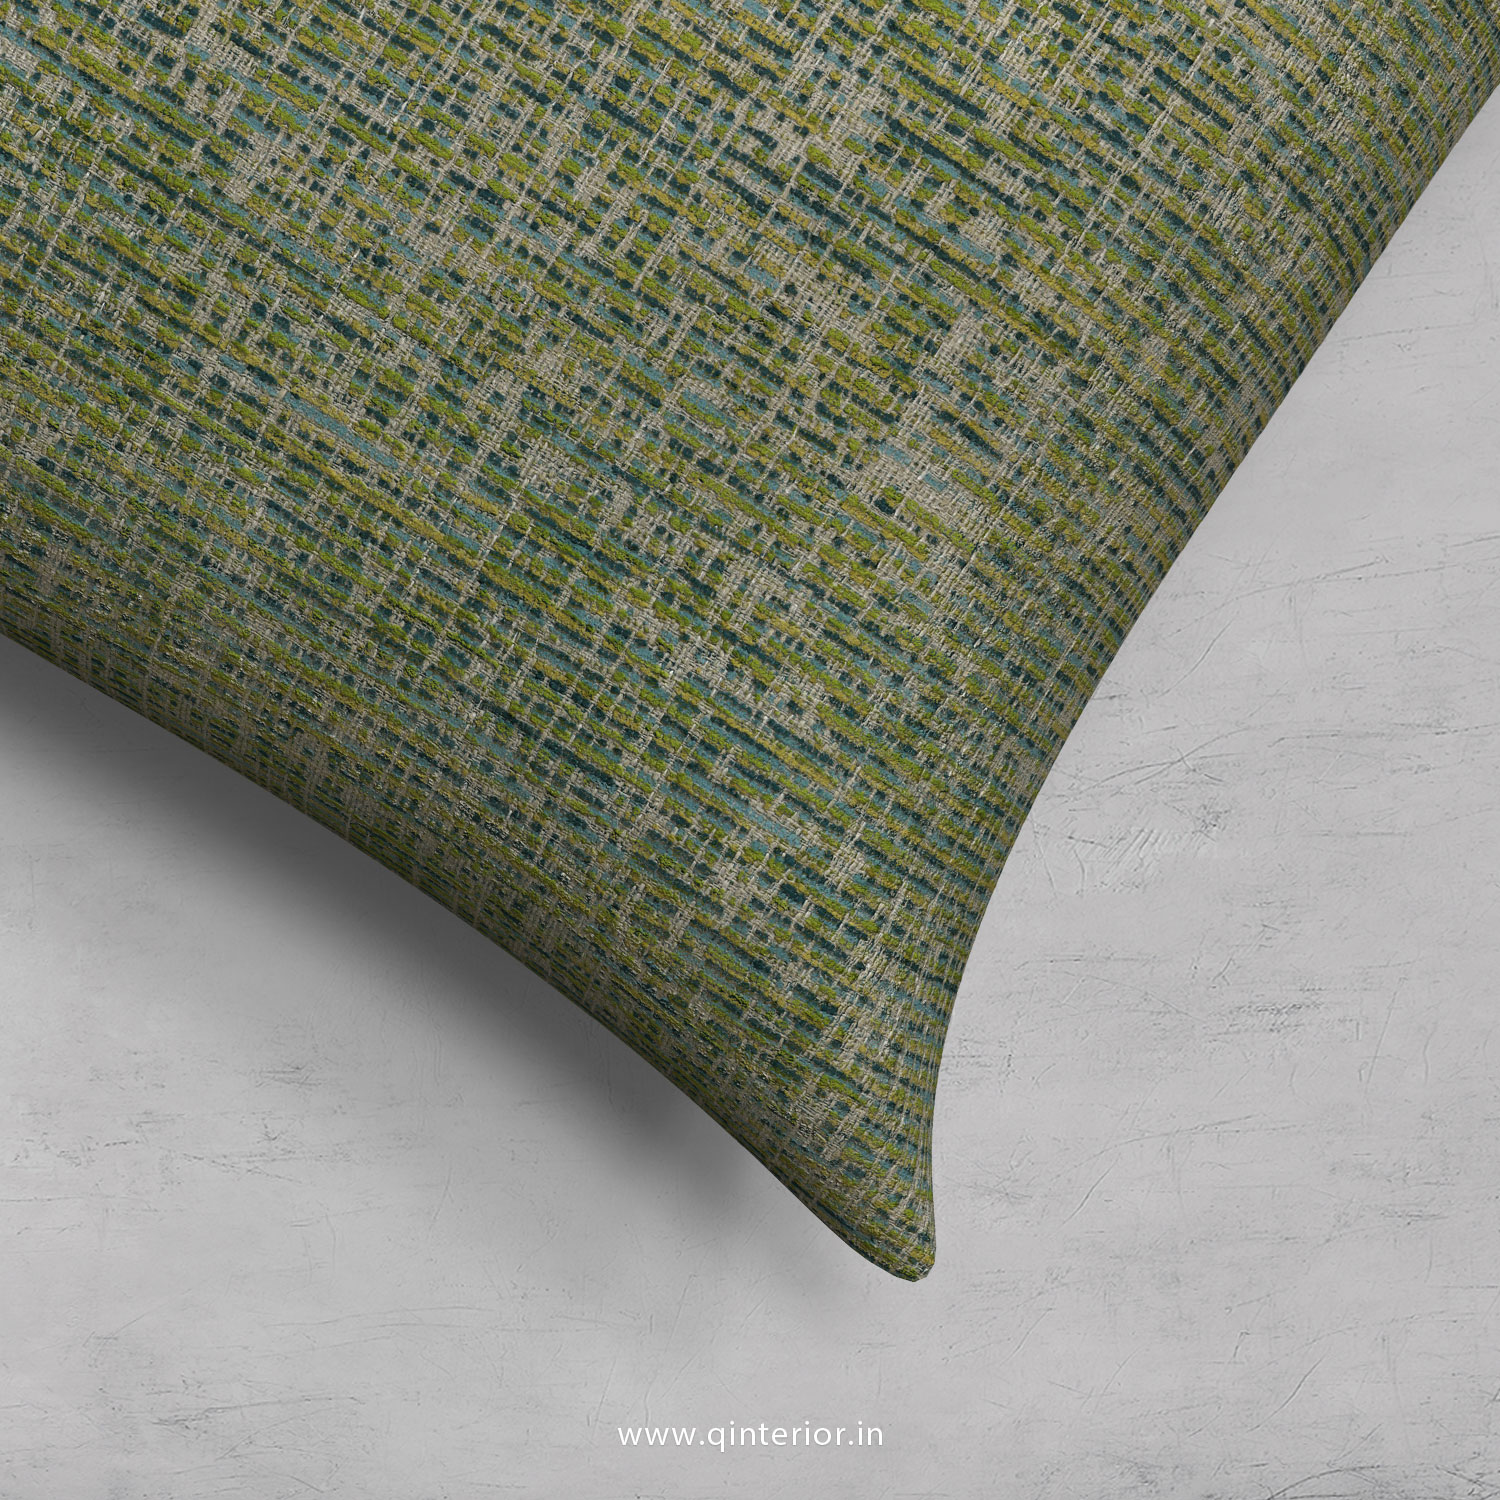 Green Jaquard Cushion With Cushion Cover - CUS002 JQ22